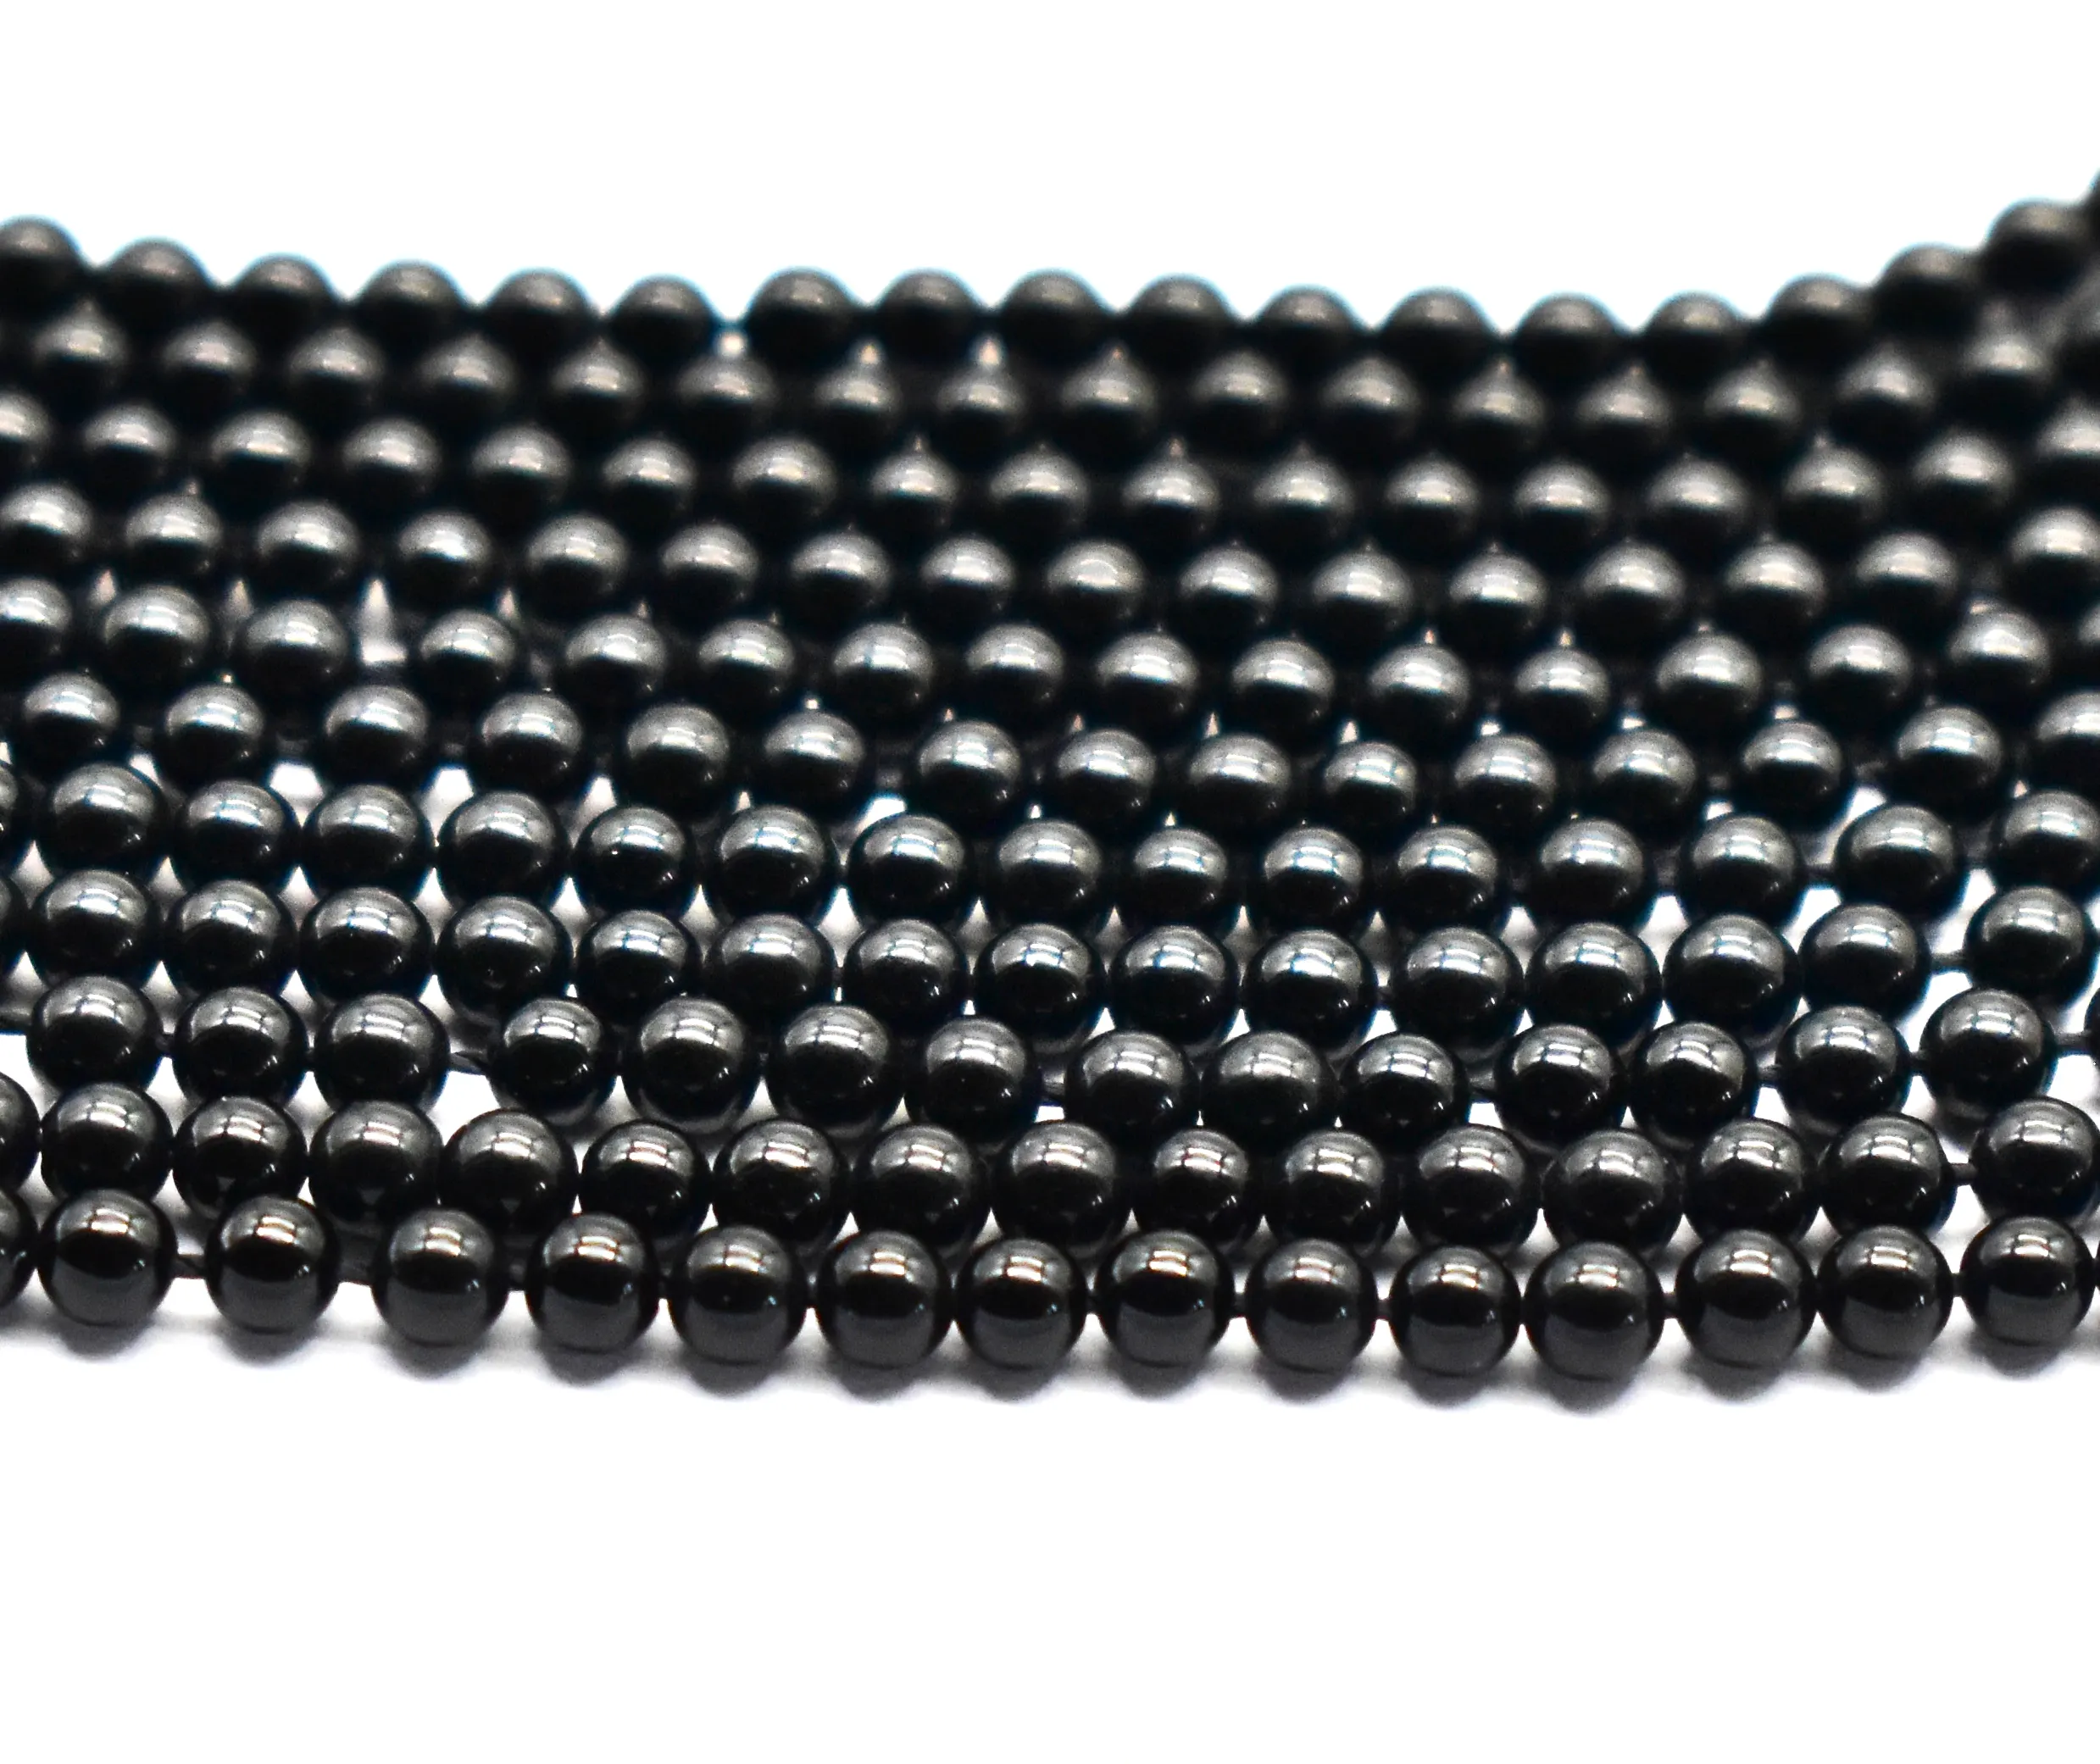 Natuurlijke Zwarte Onyx Ronde Kralen 2.5 Mm (Meer Maten Beschikbaar) 16 Inch Topkwaliteit Kristal Kralen Voor Sieraden Zwarte Agaat Kralen